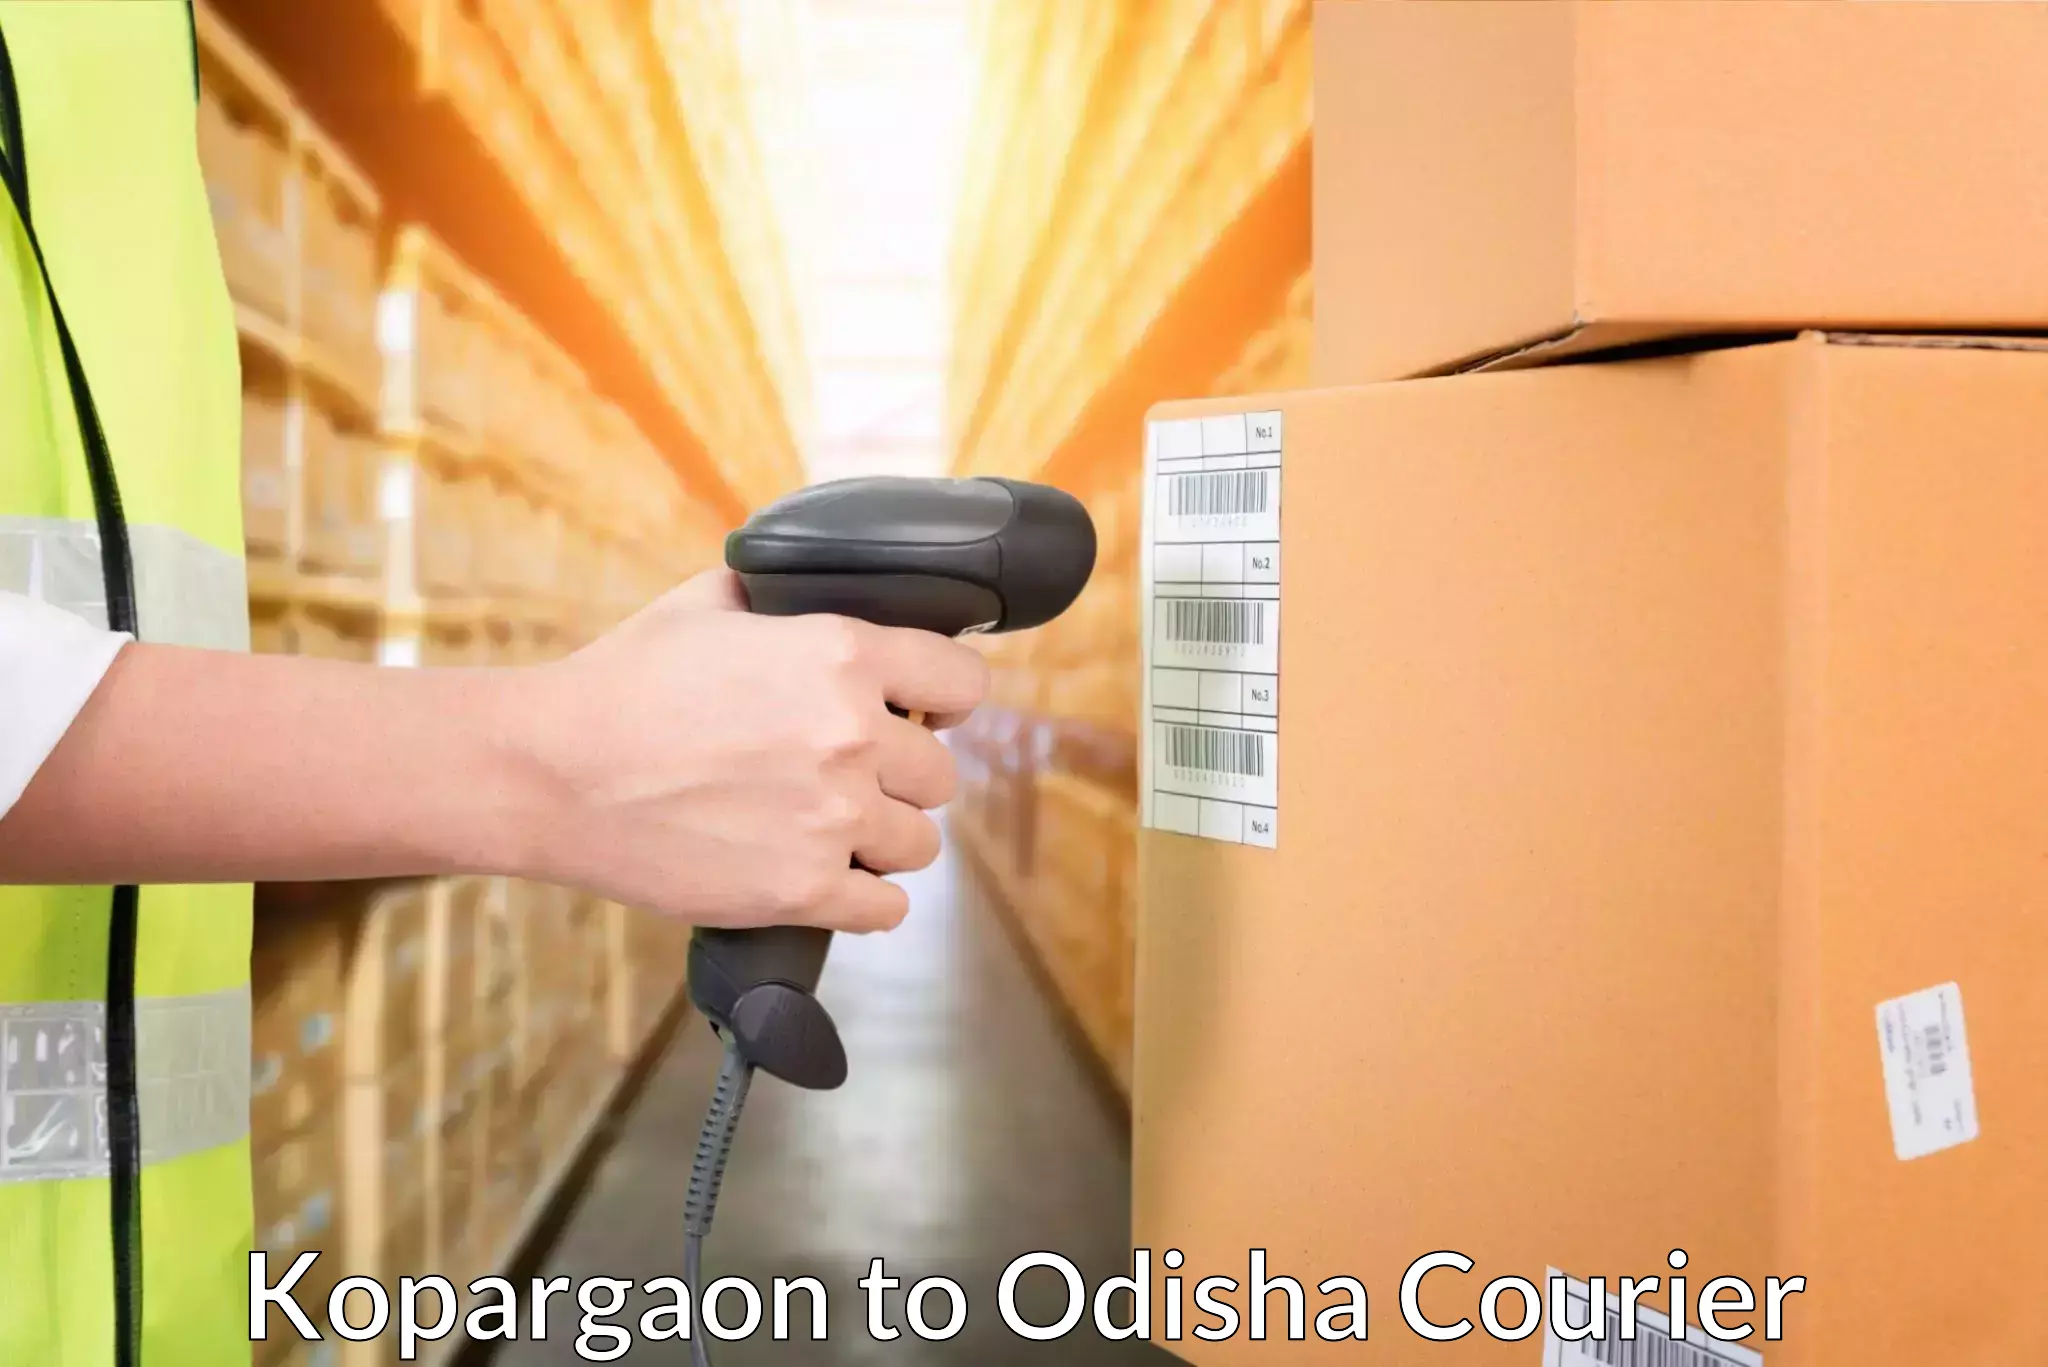 Global courier networks Kopargaon to Odisha